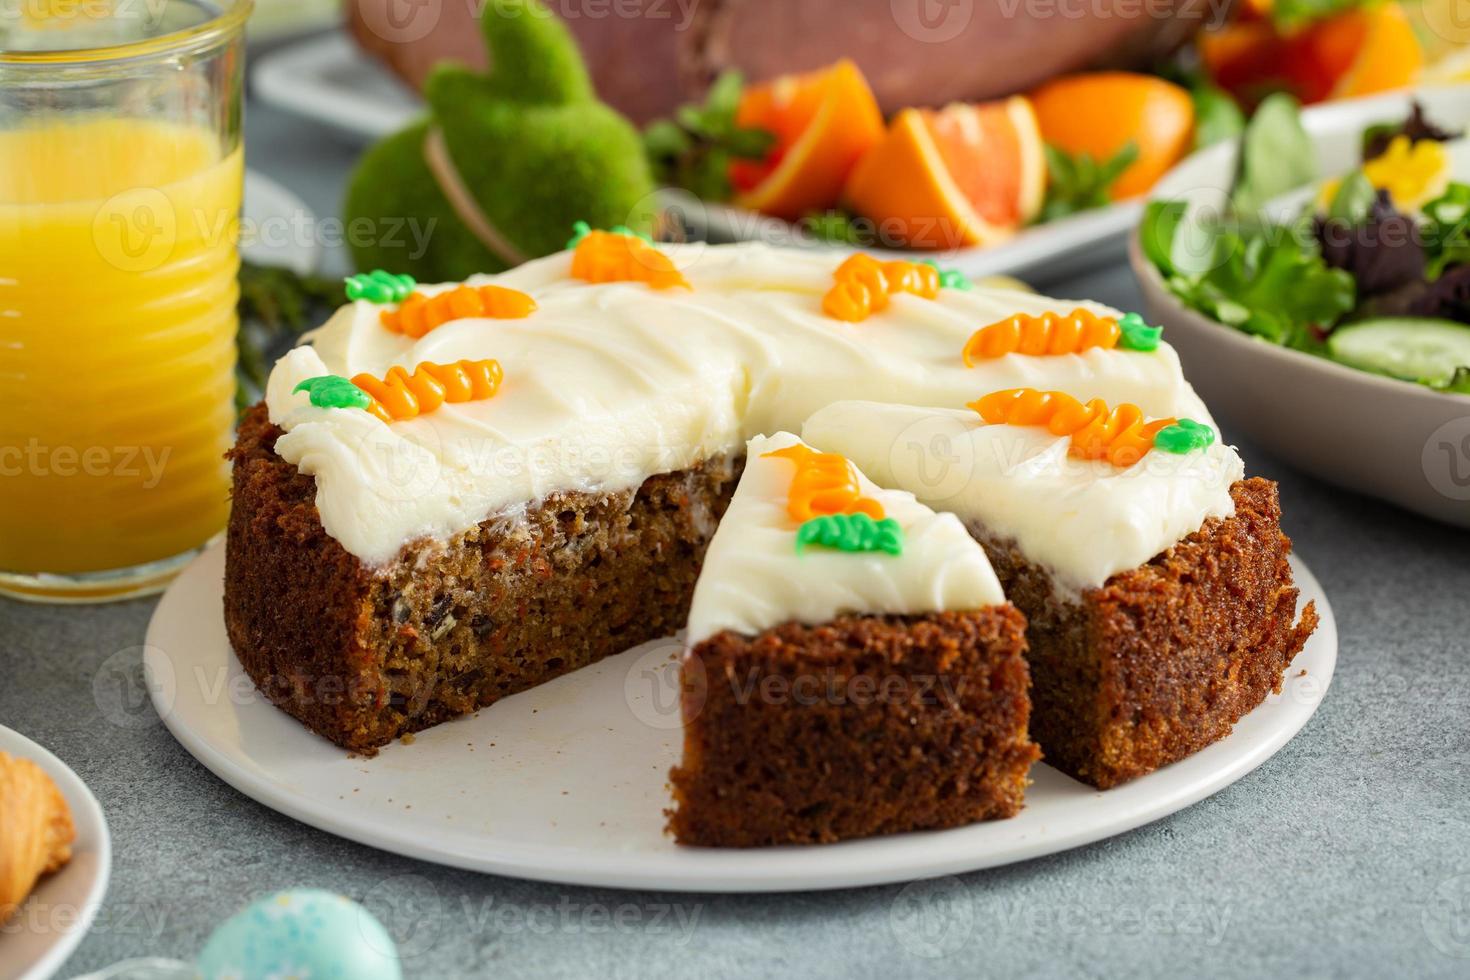 Traditional carrot cake for Easter brunch or dinner photo